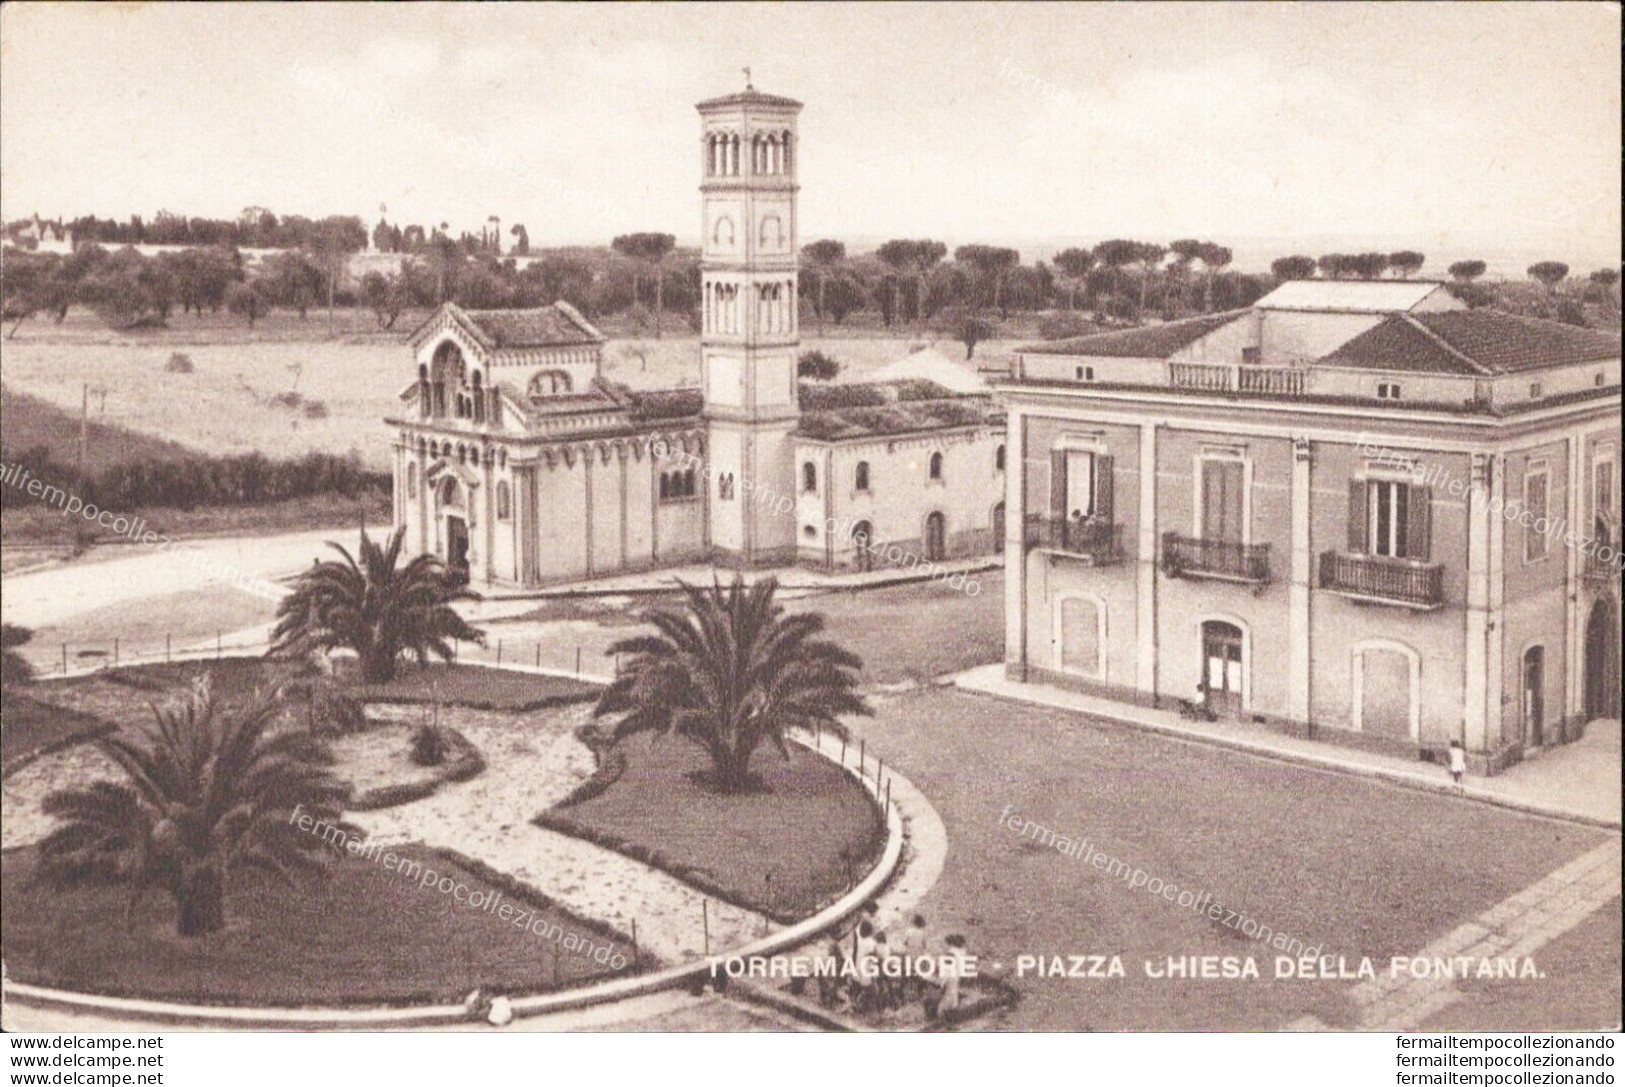 Am33 Cartolina Torremaggiore Piazza Chiesa Della Fontana Provincia Di Foggia - Foggia